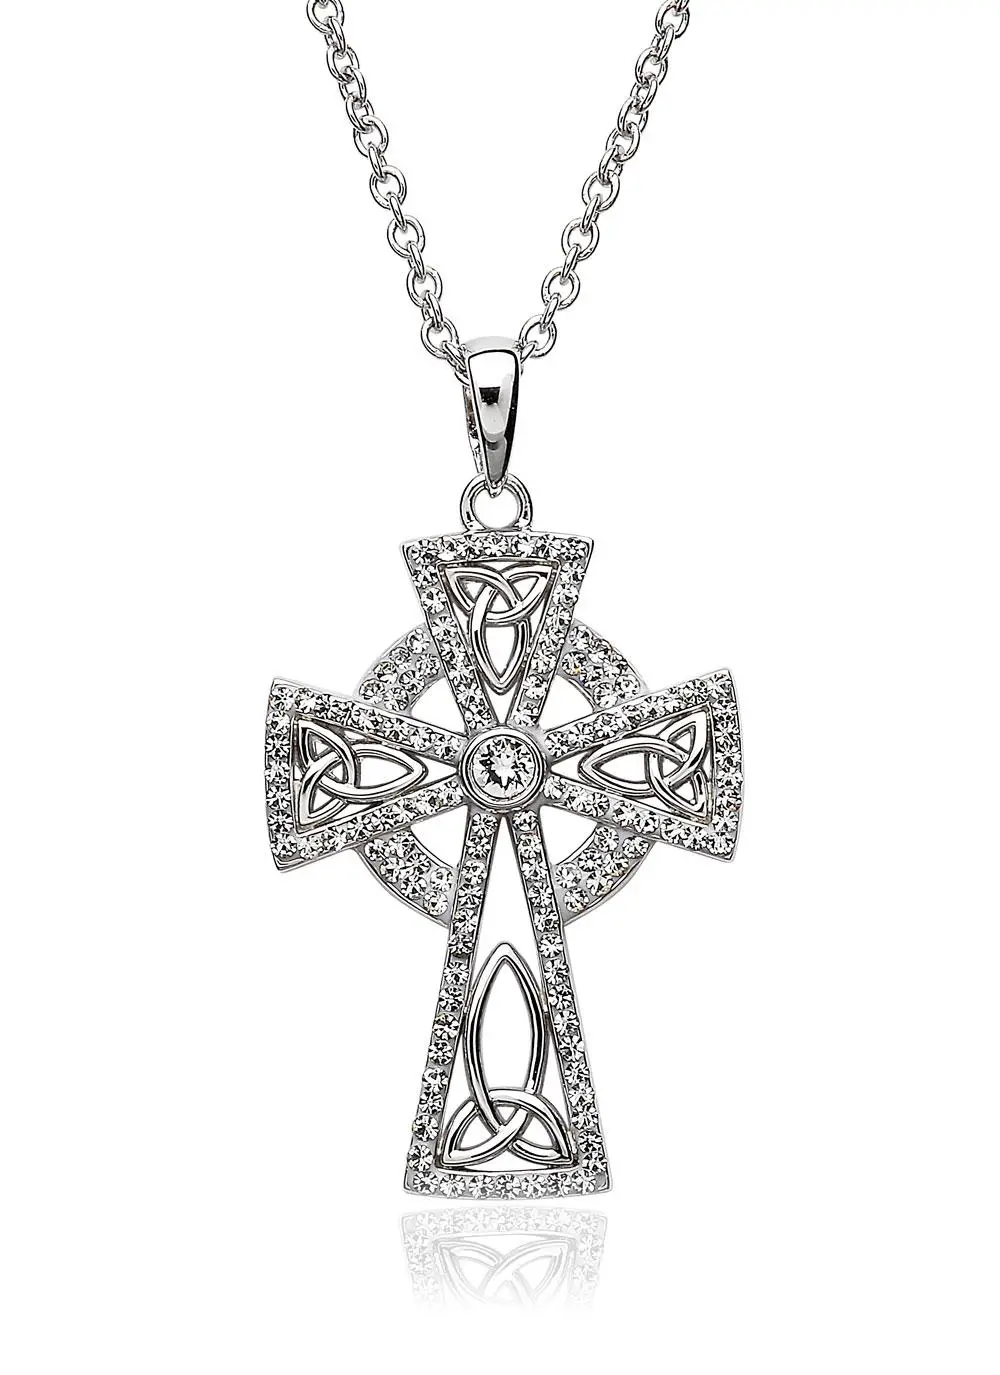 NEW!! The Swarovski Donatella Cross Necklace – Glitzy Bella